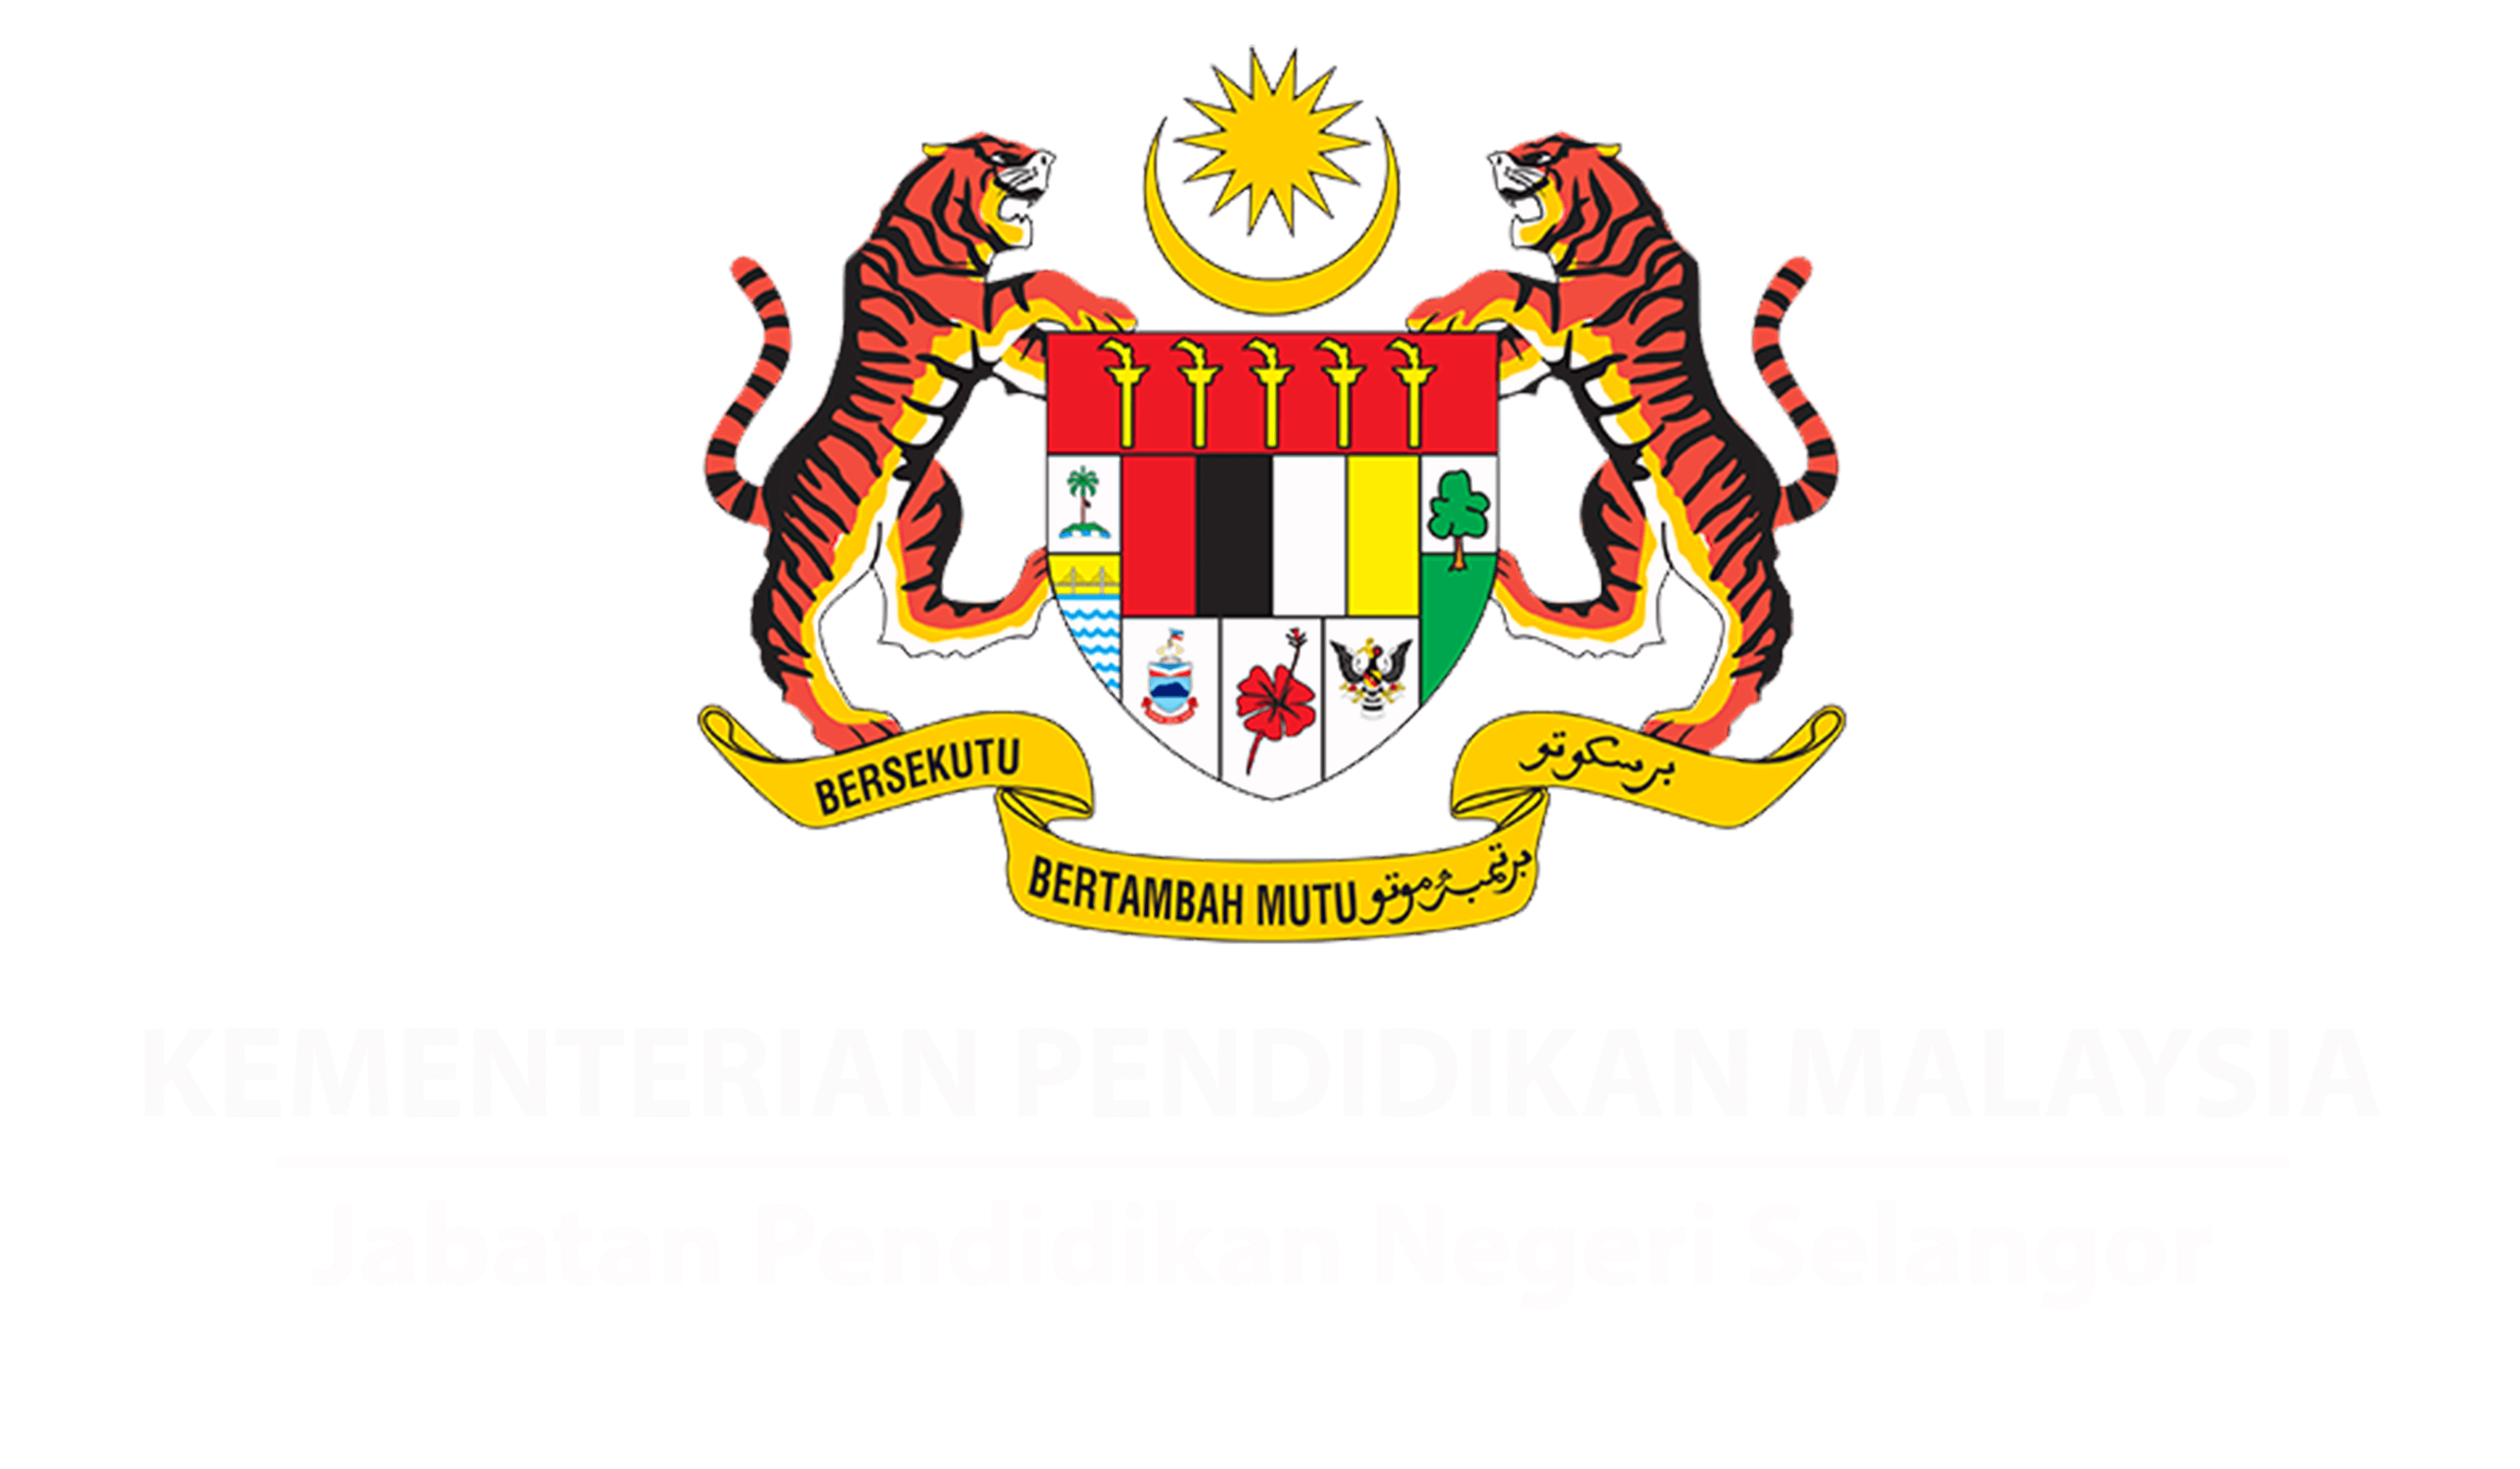 Download Contoh Logo Unejhitam Putih Cari Logo - vrogue.co